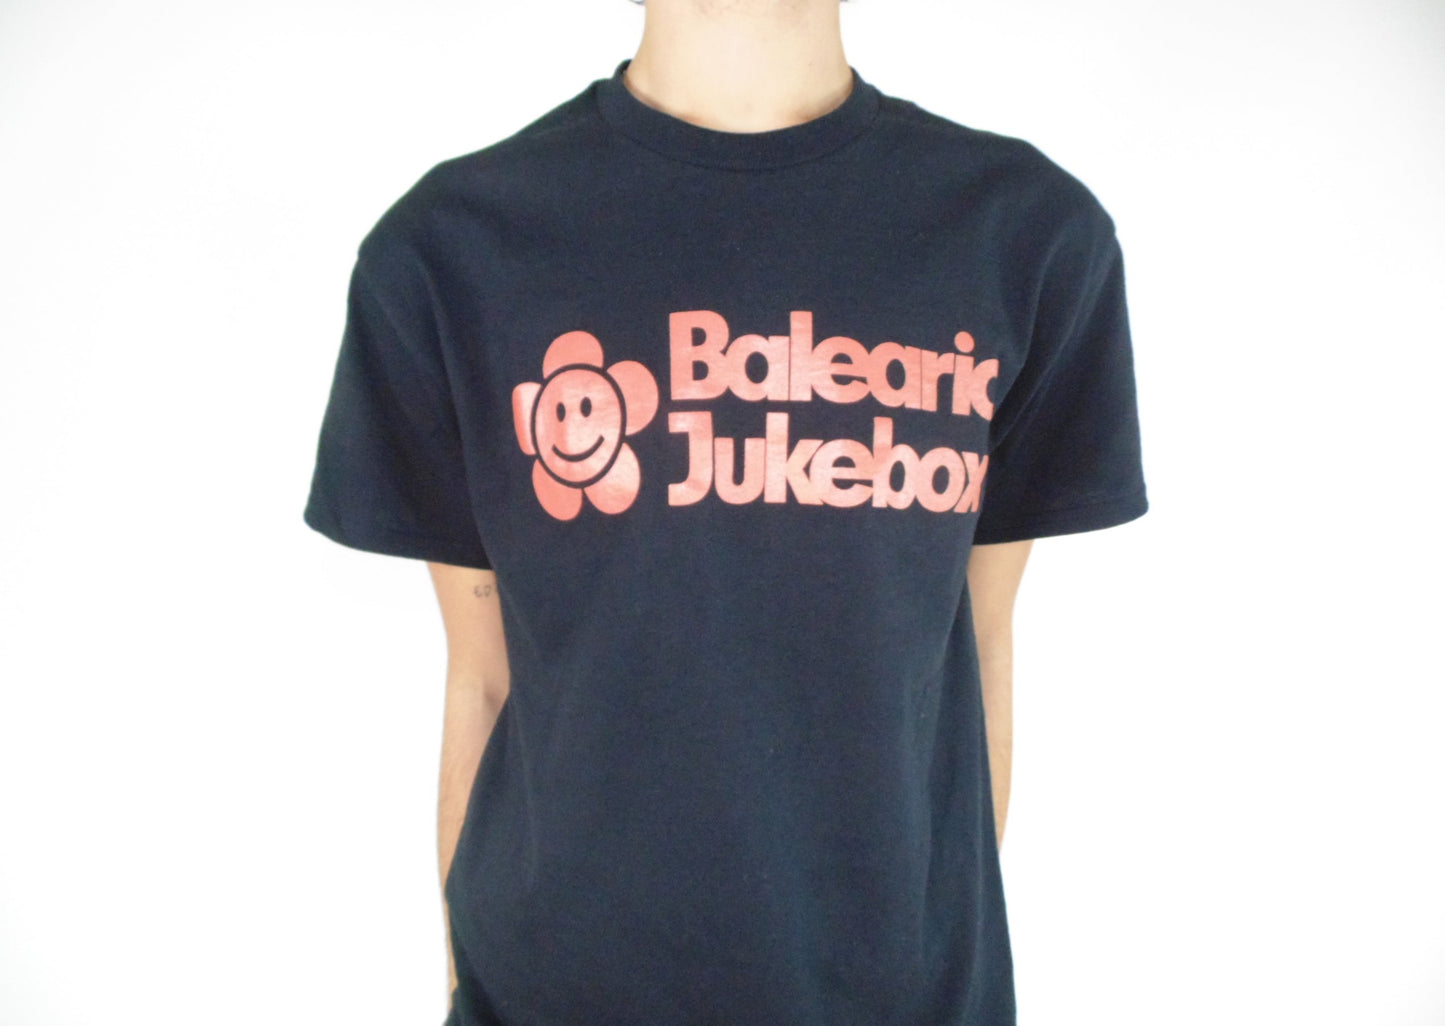 Balearic Jukebox Revival Black Tee